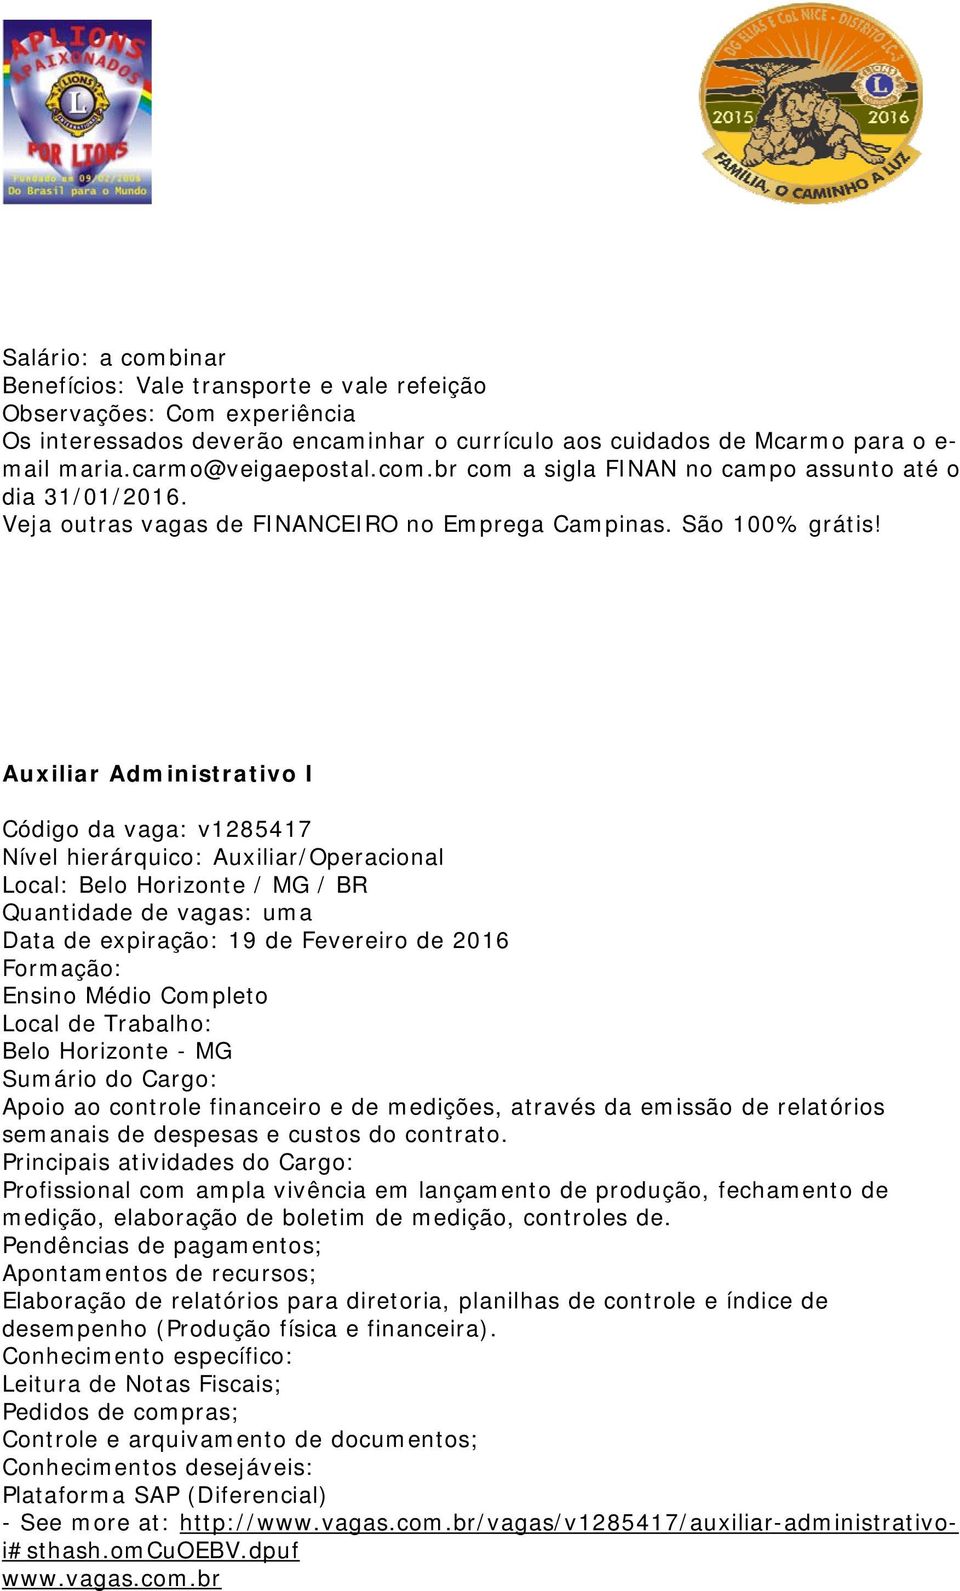 Auxiliar Administrativo I Código da vaga: v1285417 Nível hierárquico: Auxiliar/Operacional Local: Belo Horizonte / MG / BR Quantidade de vagas: uma Data de expiração: 19 de Fevereiro de 2016